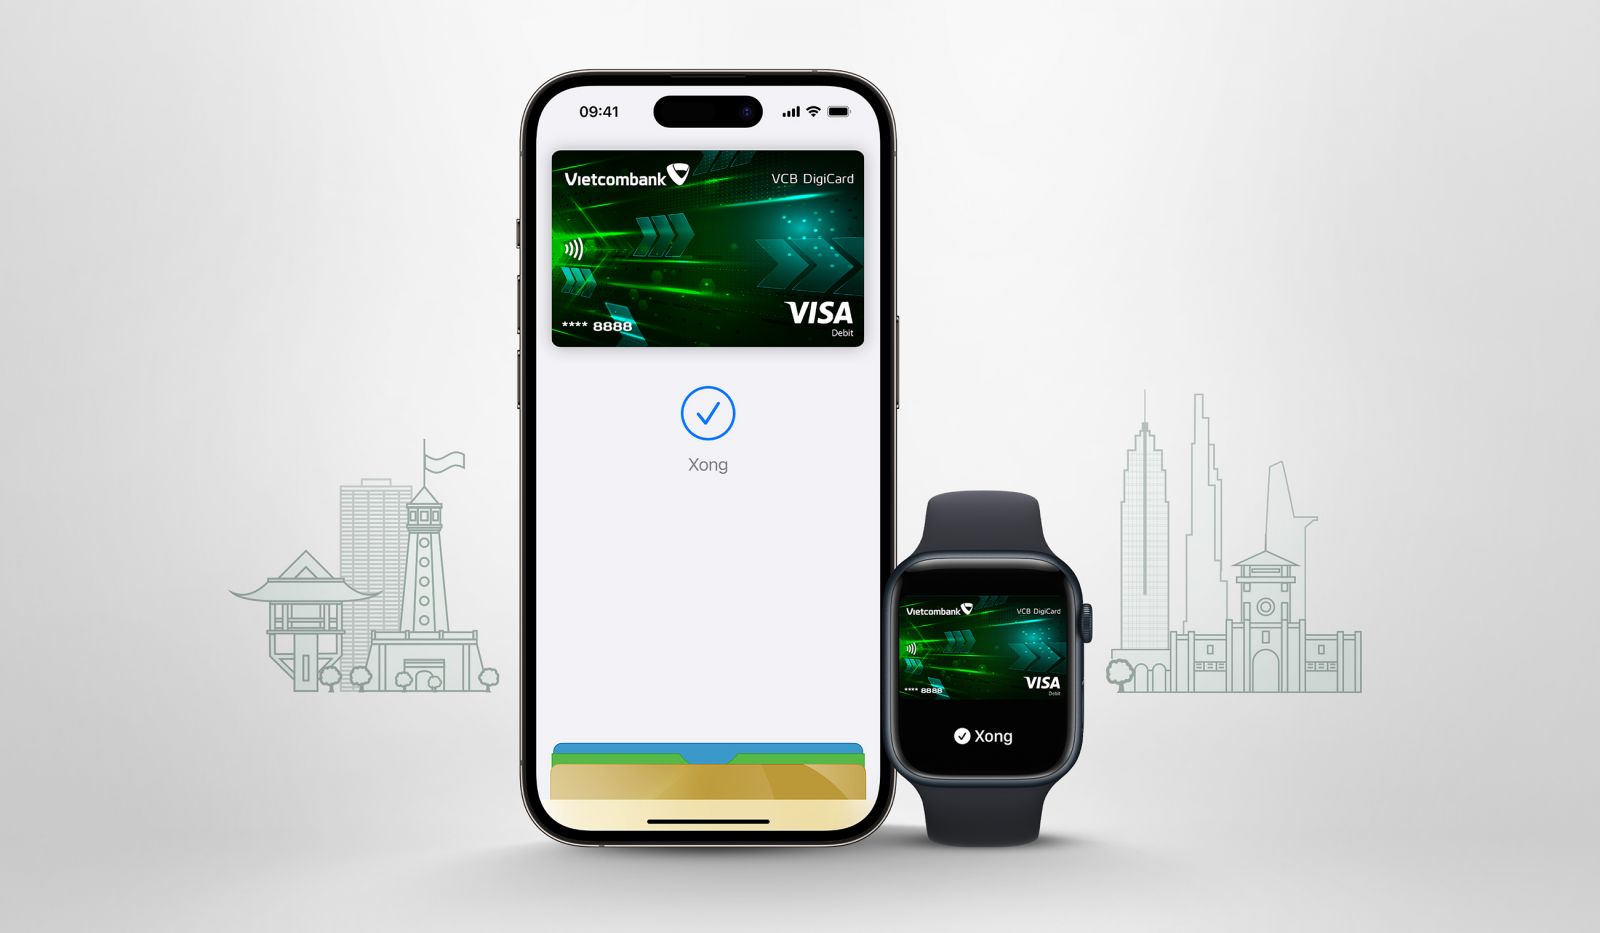 Ngày 8/8, Vietcombank chính thức giới thiệu đến chủ thẻ Visa Apple Pay, một phương thức thanh toán an toàn, bảo mật và riêng tư hơn giúp khách hàng tránh việc đưa thẻ thanh toán cho người khác. 